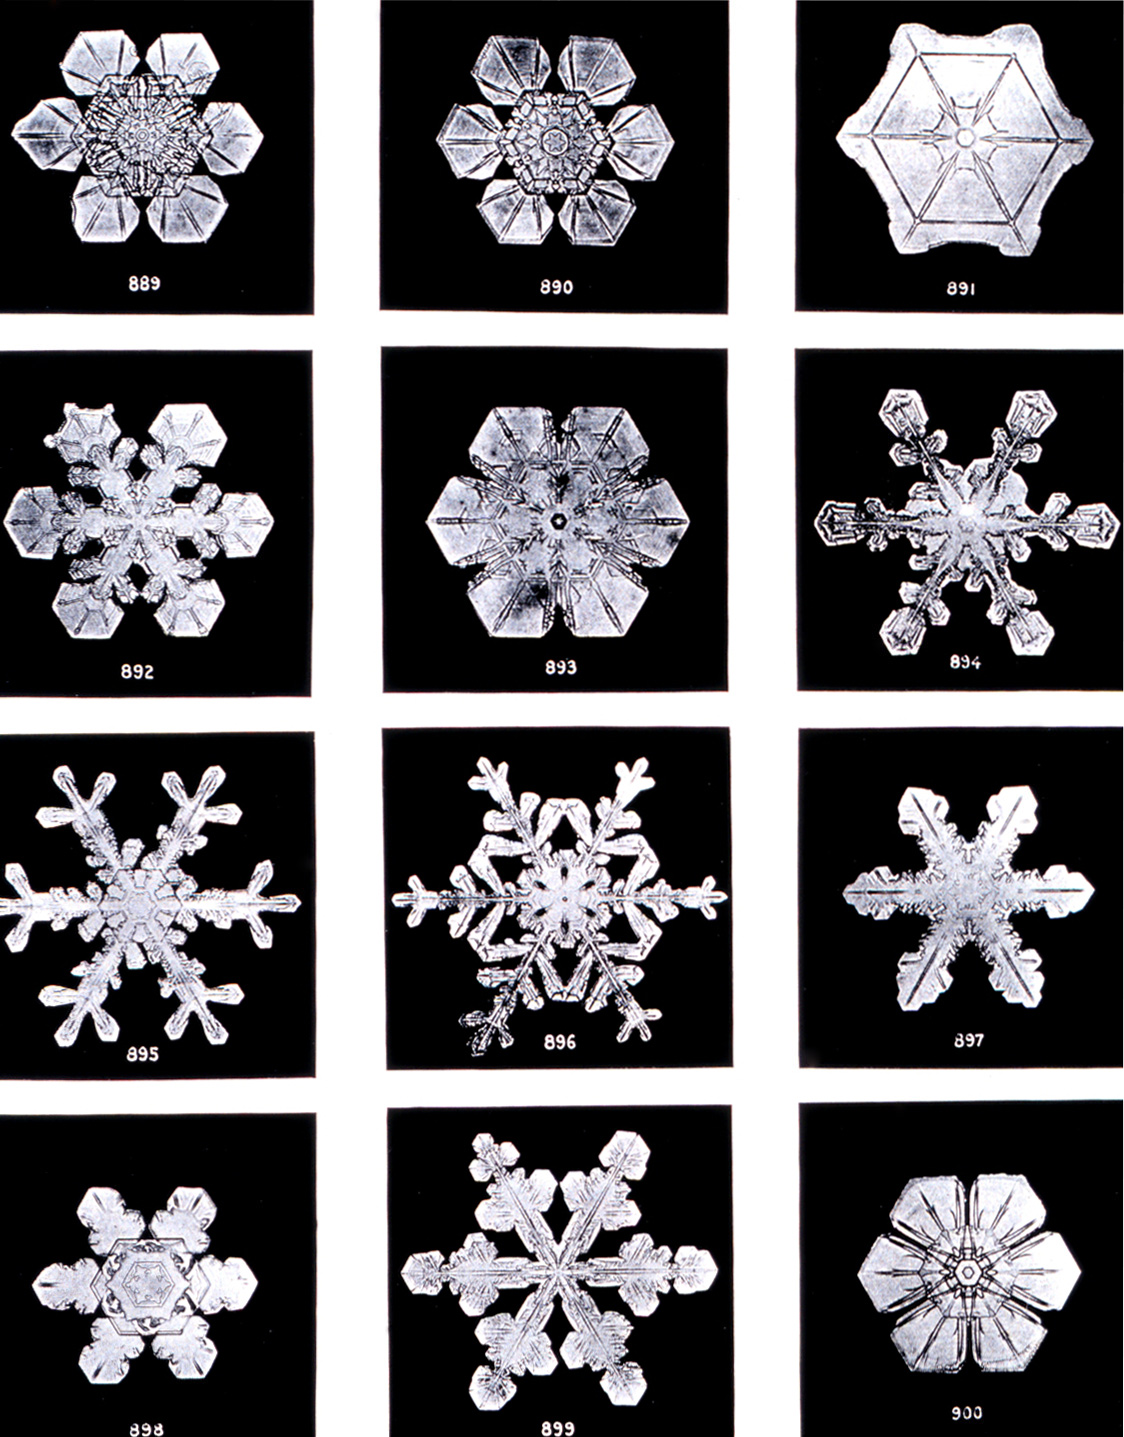 SnowflakesWilsonBentley (1)